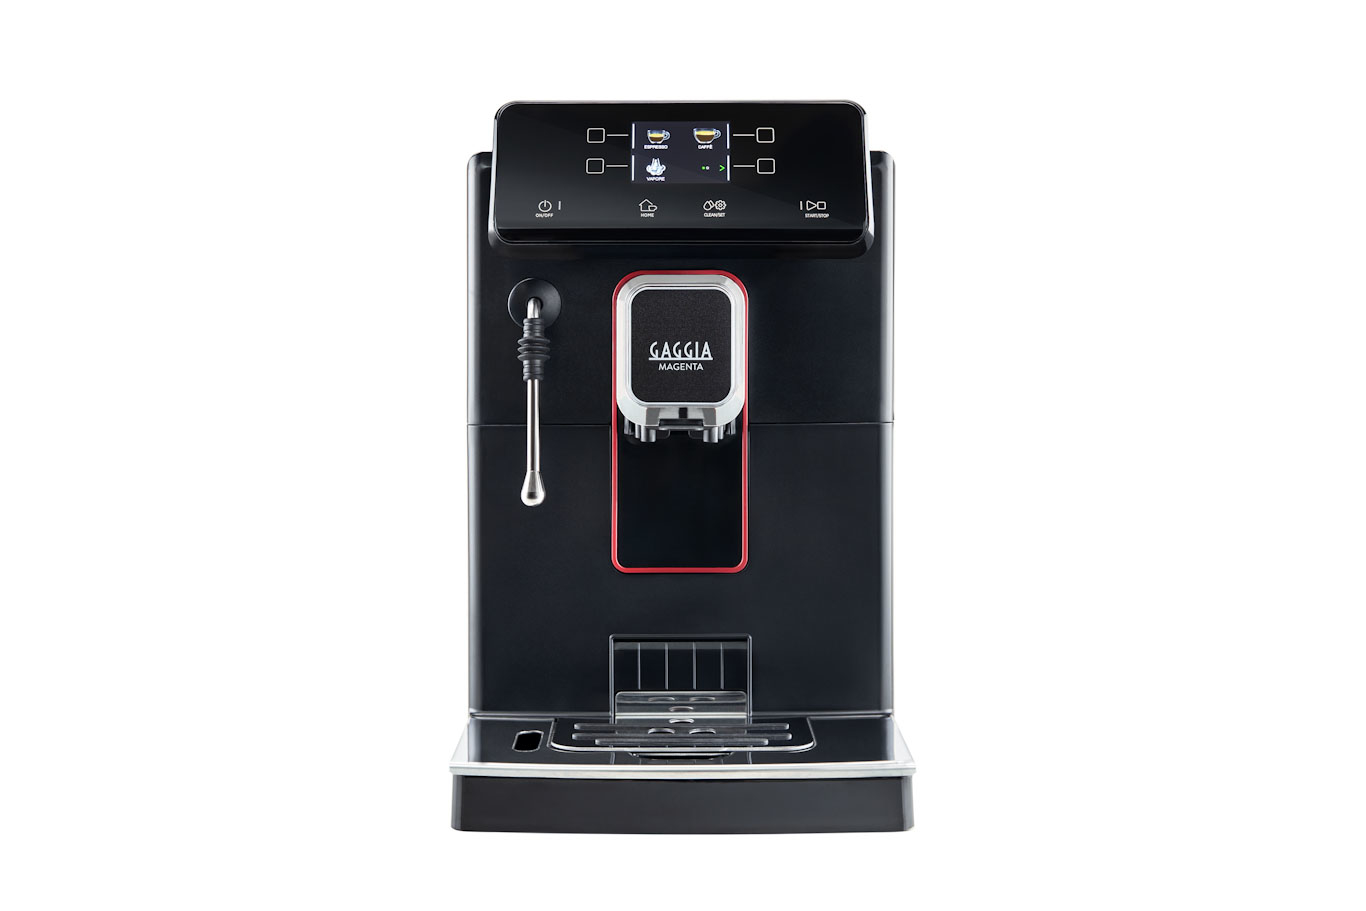 Visuel deMachine à café grains - Magenta Plus Machine à café grains broyeuse tout automatique